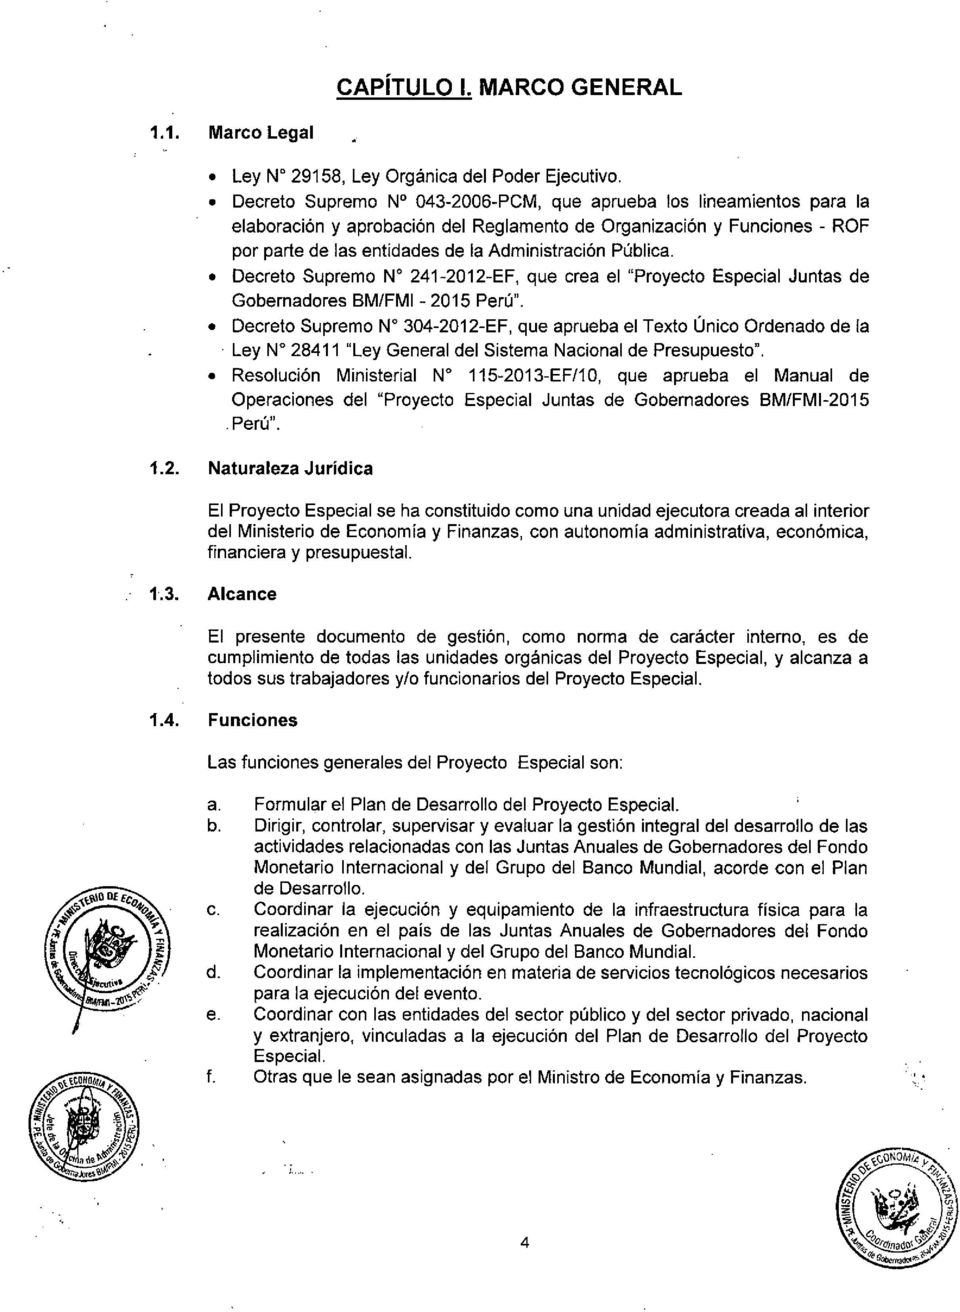 Decreto Supremo N" 241-2012-EF, que crea el "Proyecto Especial Juntas de Gobernadores BM/FMI - 2015 Perú". Decreto Supremo N" 304-2012-EF, que aprueba el Texto Único Ordenado de la.